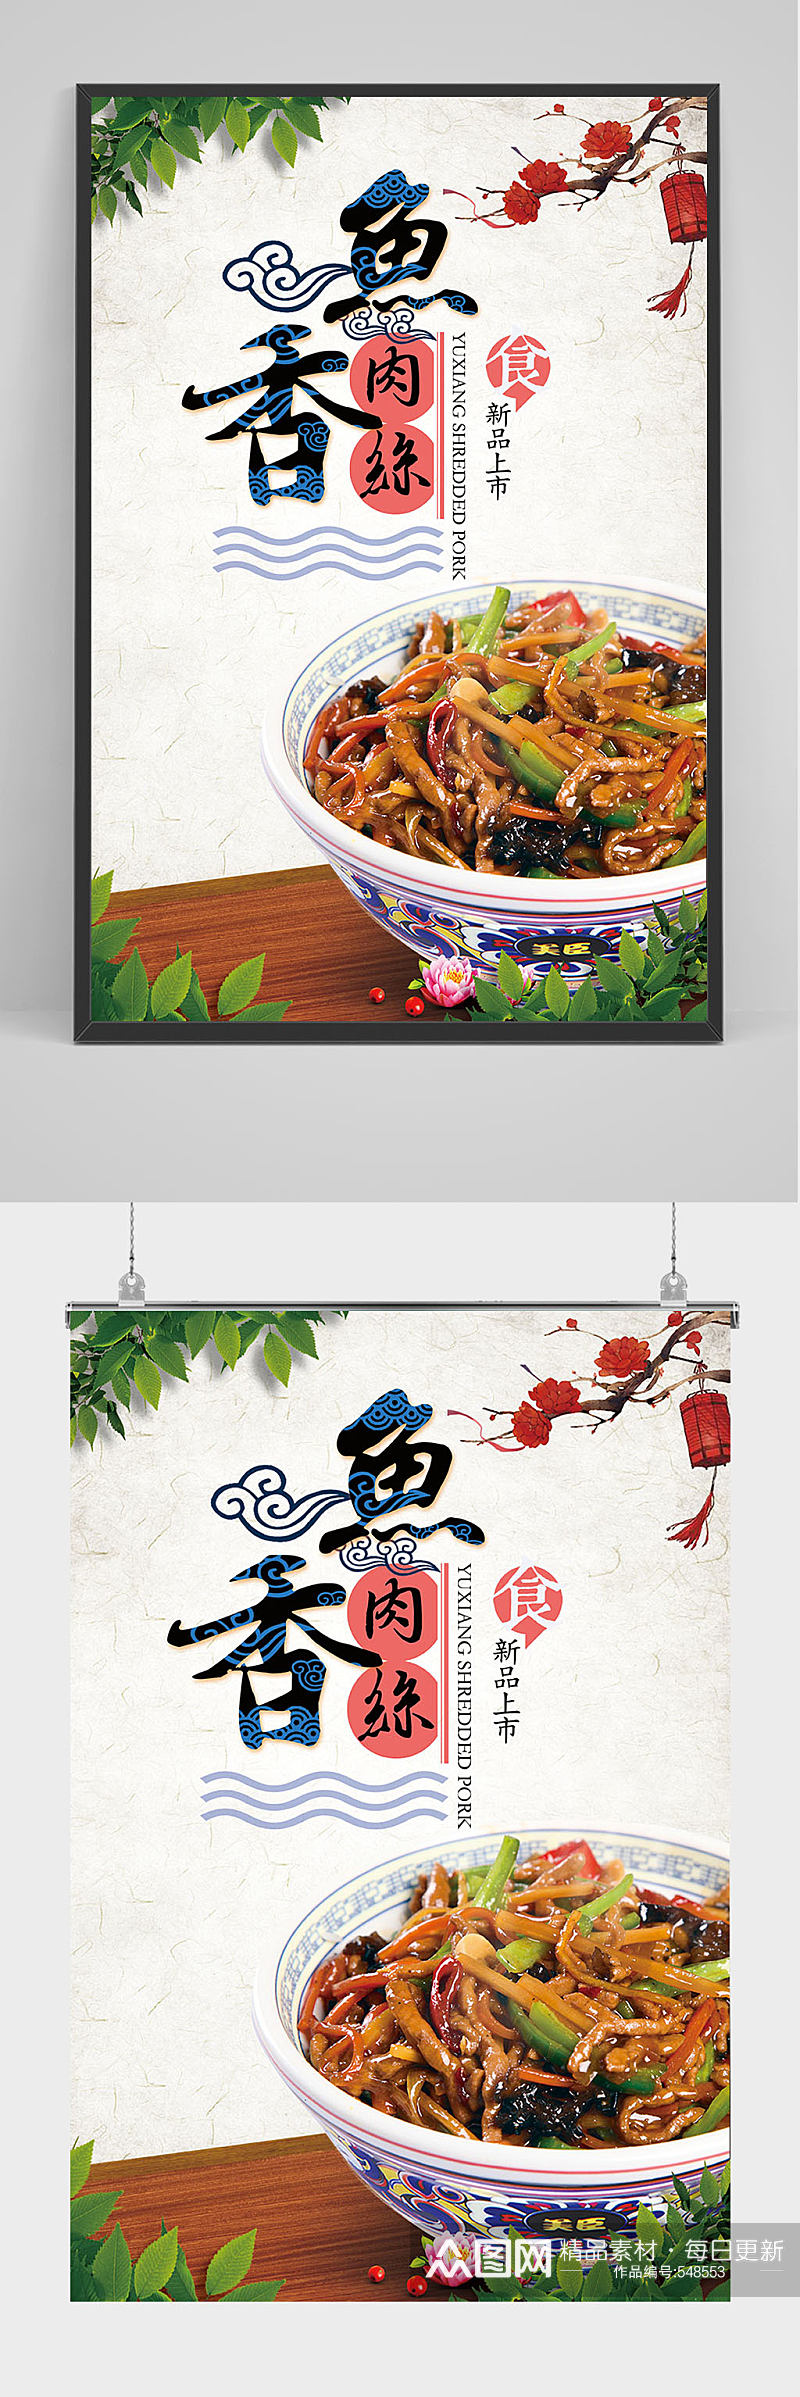 中国风鱼香肉丝海报设计素材